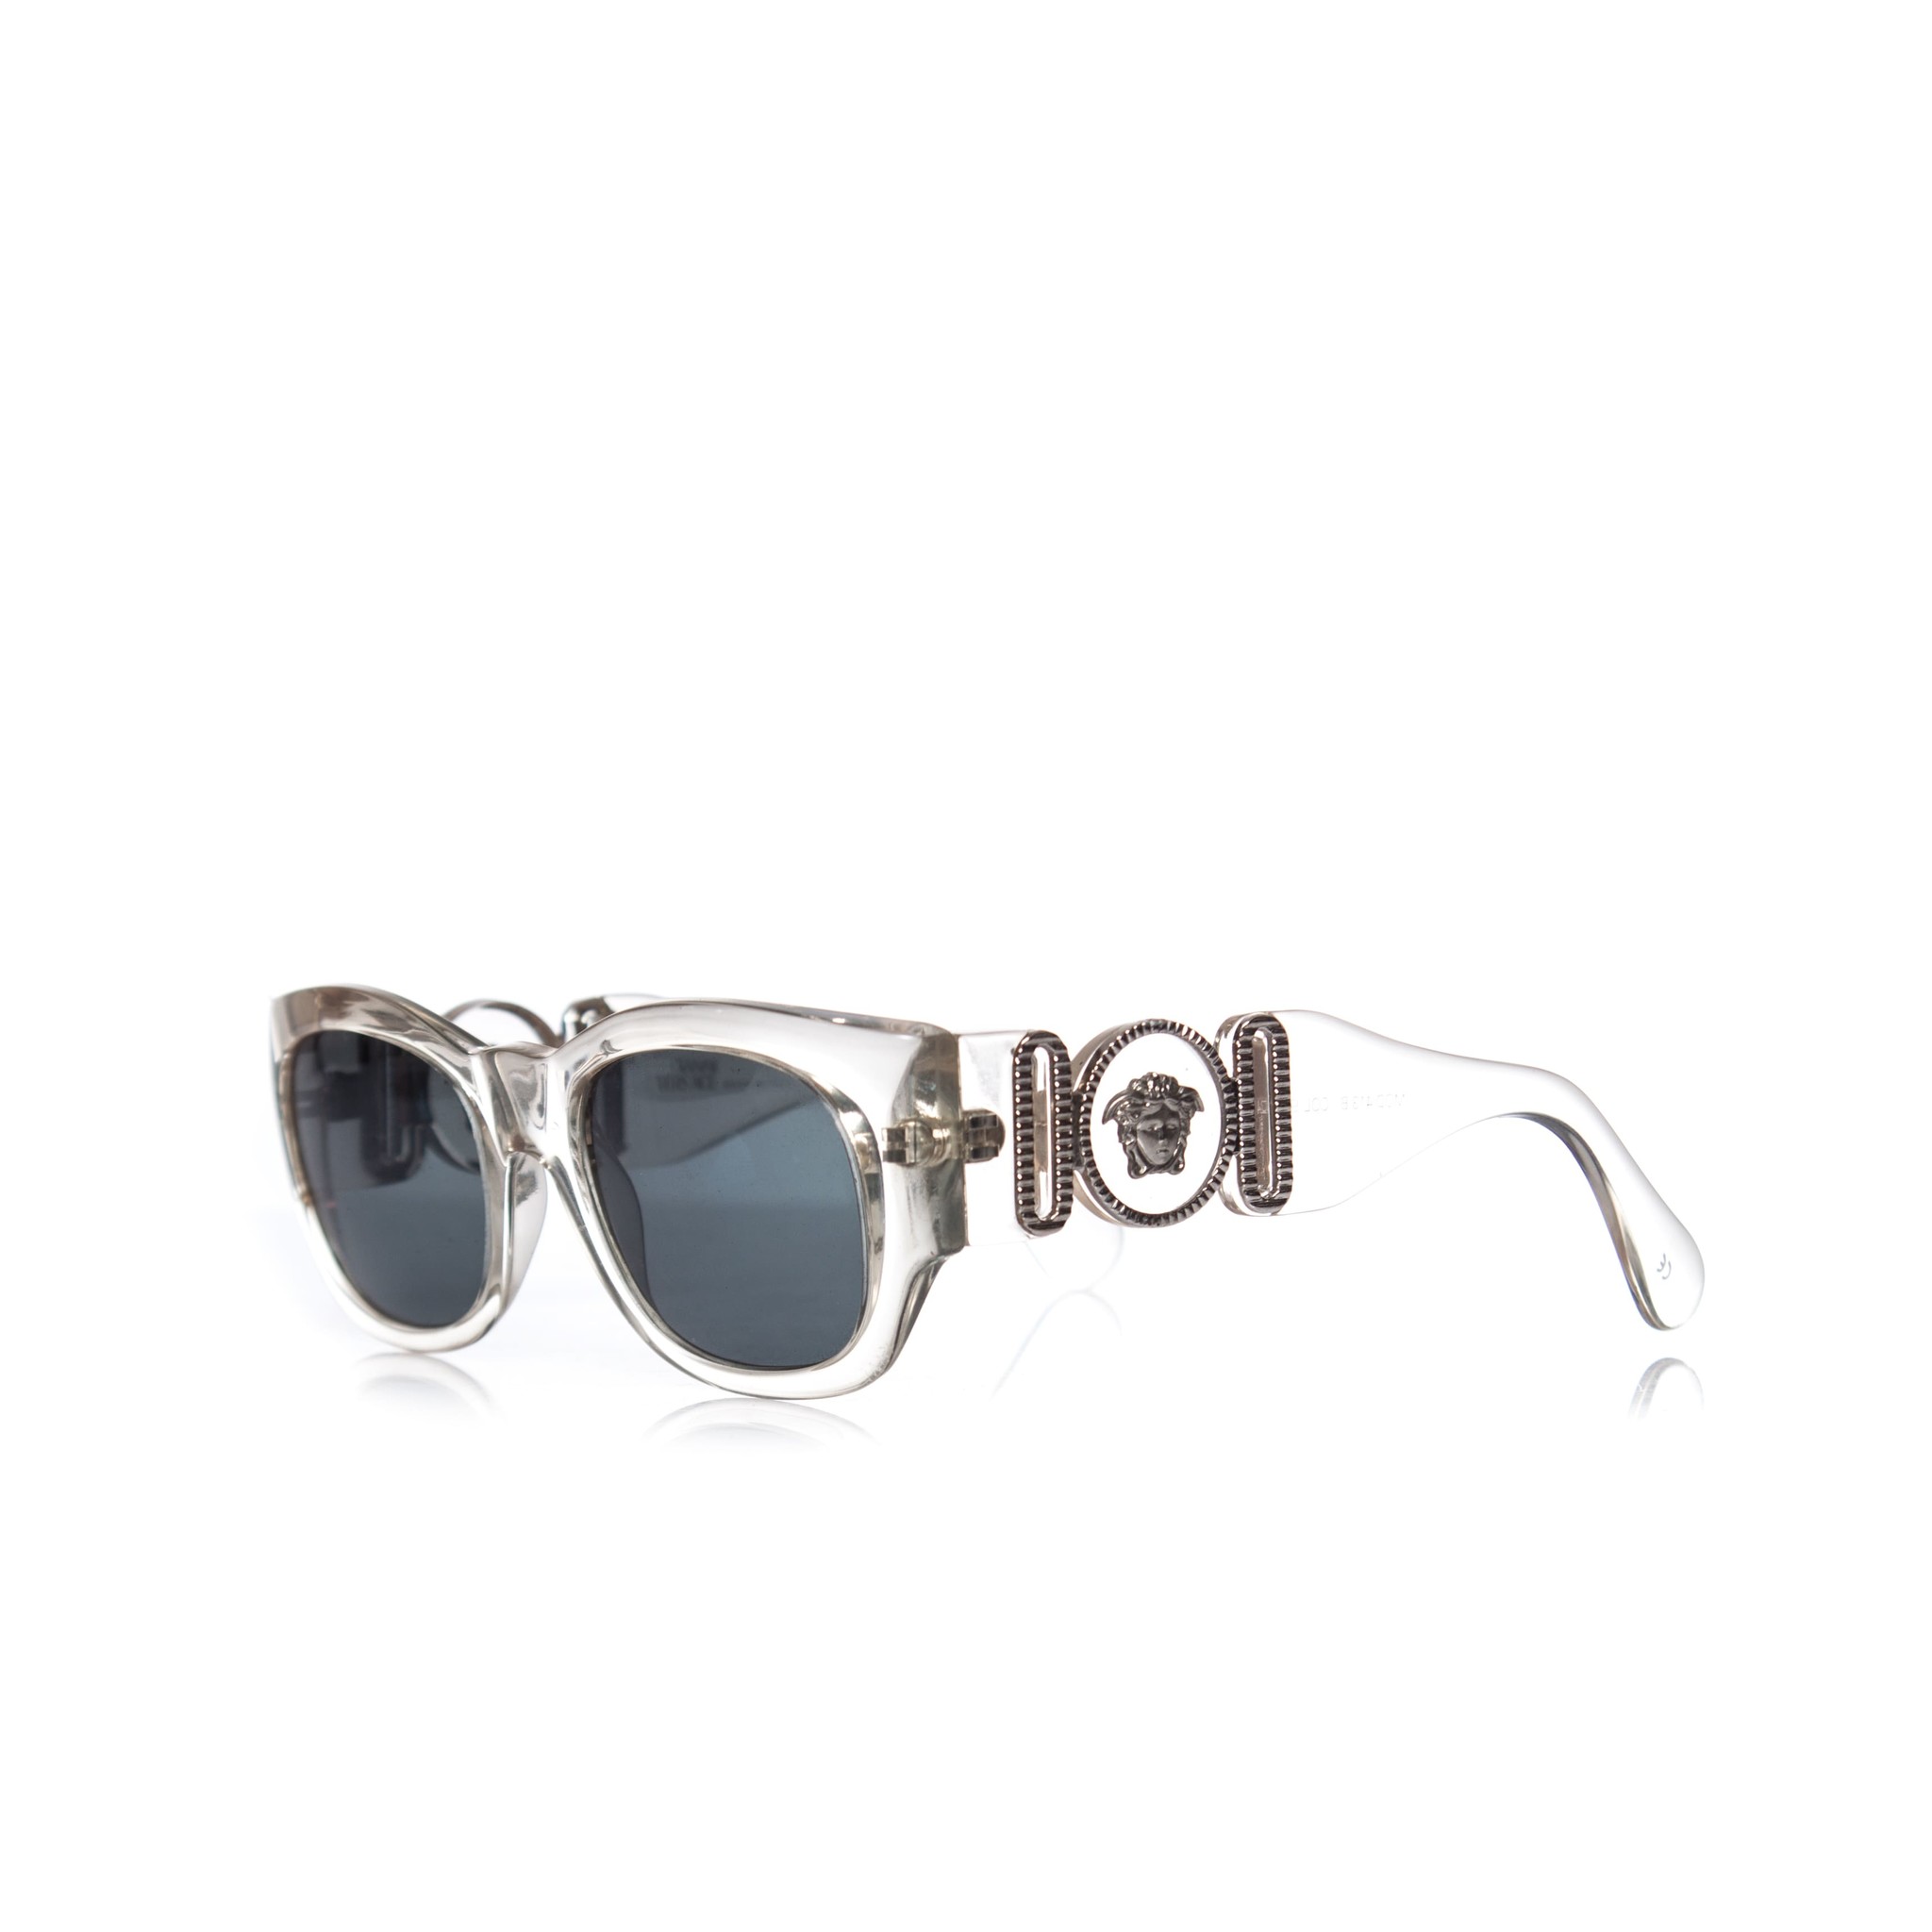 Ciro heel veel Verplaatsbaar Gianni Versace, oversized doorzichtige zonnebril. - Unique Designer Pieces